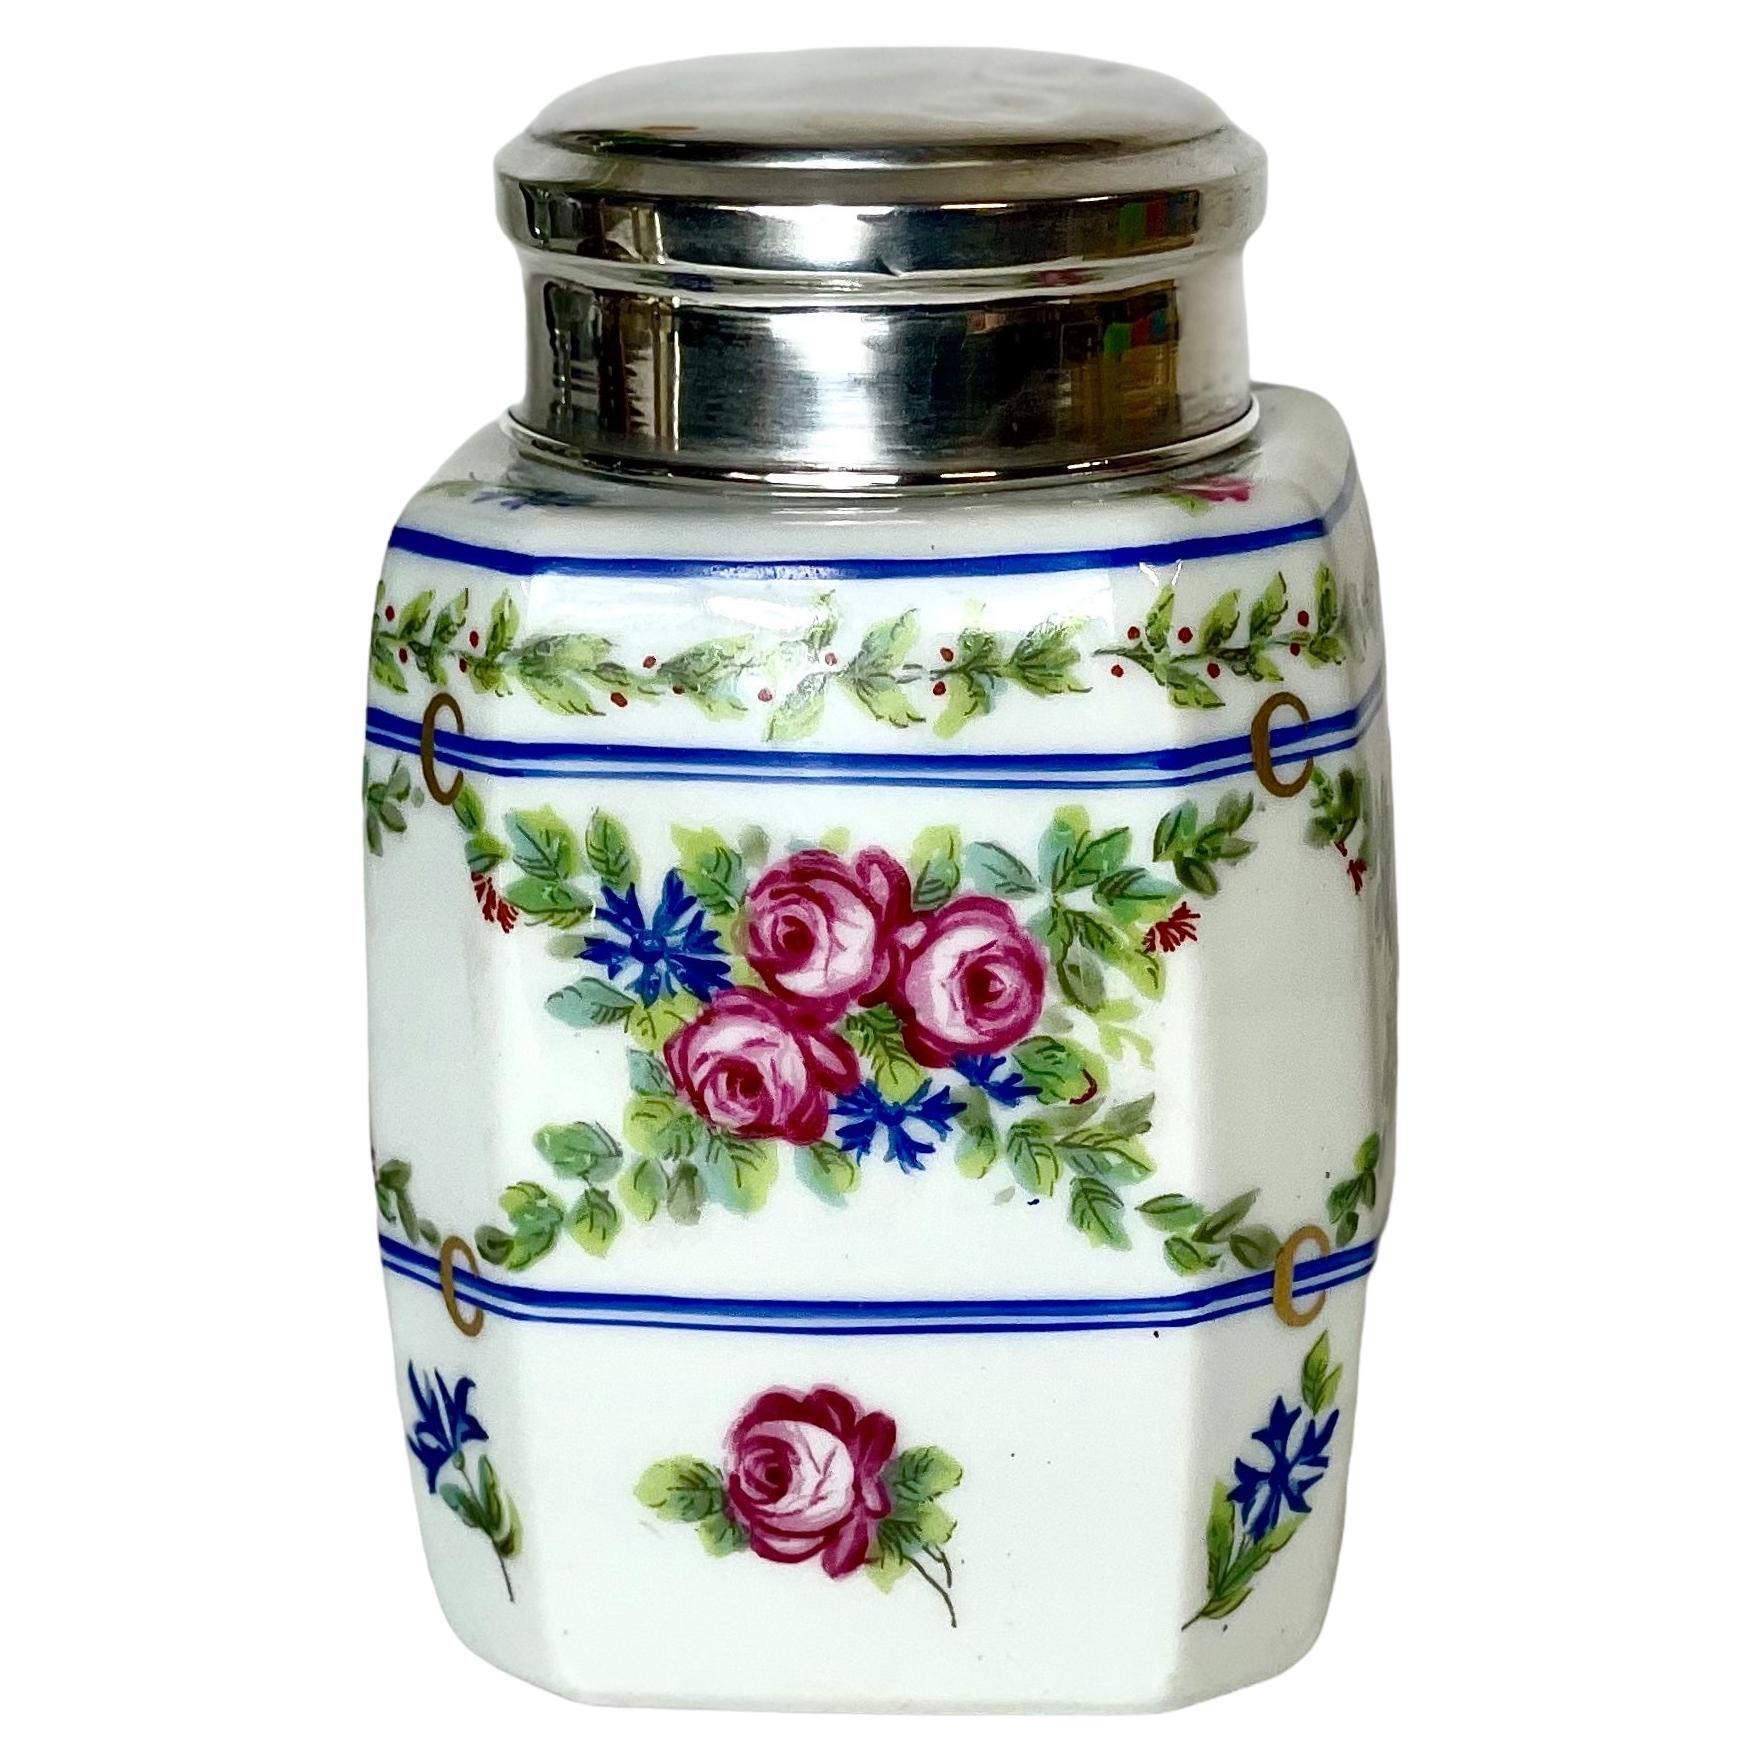 Limoges Porcelain Jar with Silver Lid For Sale